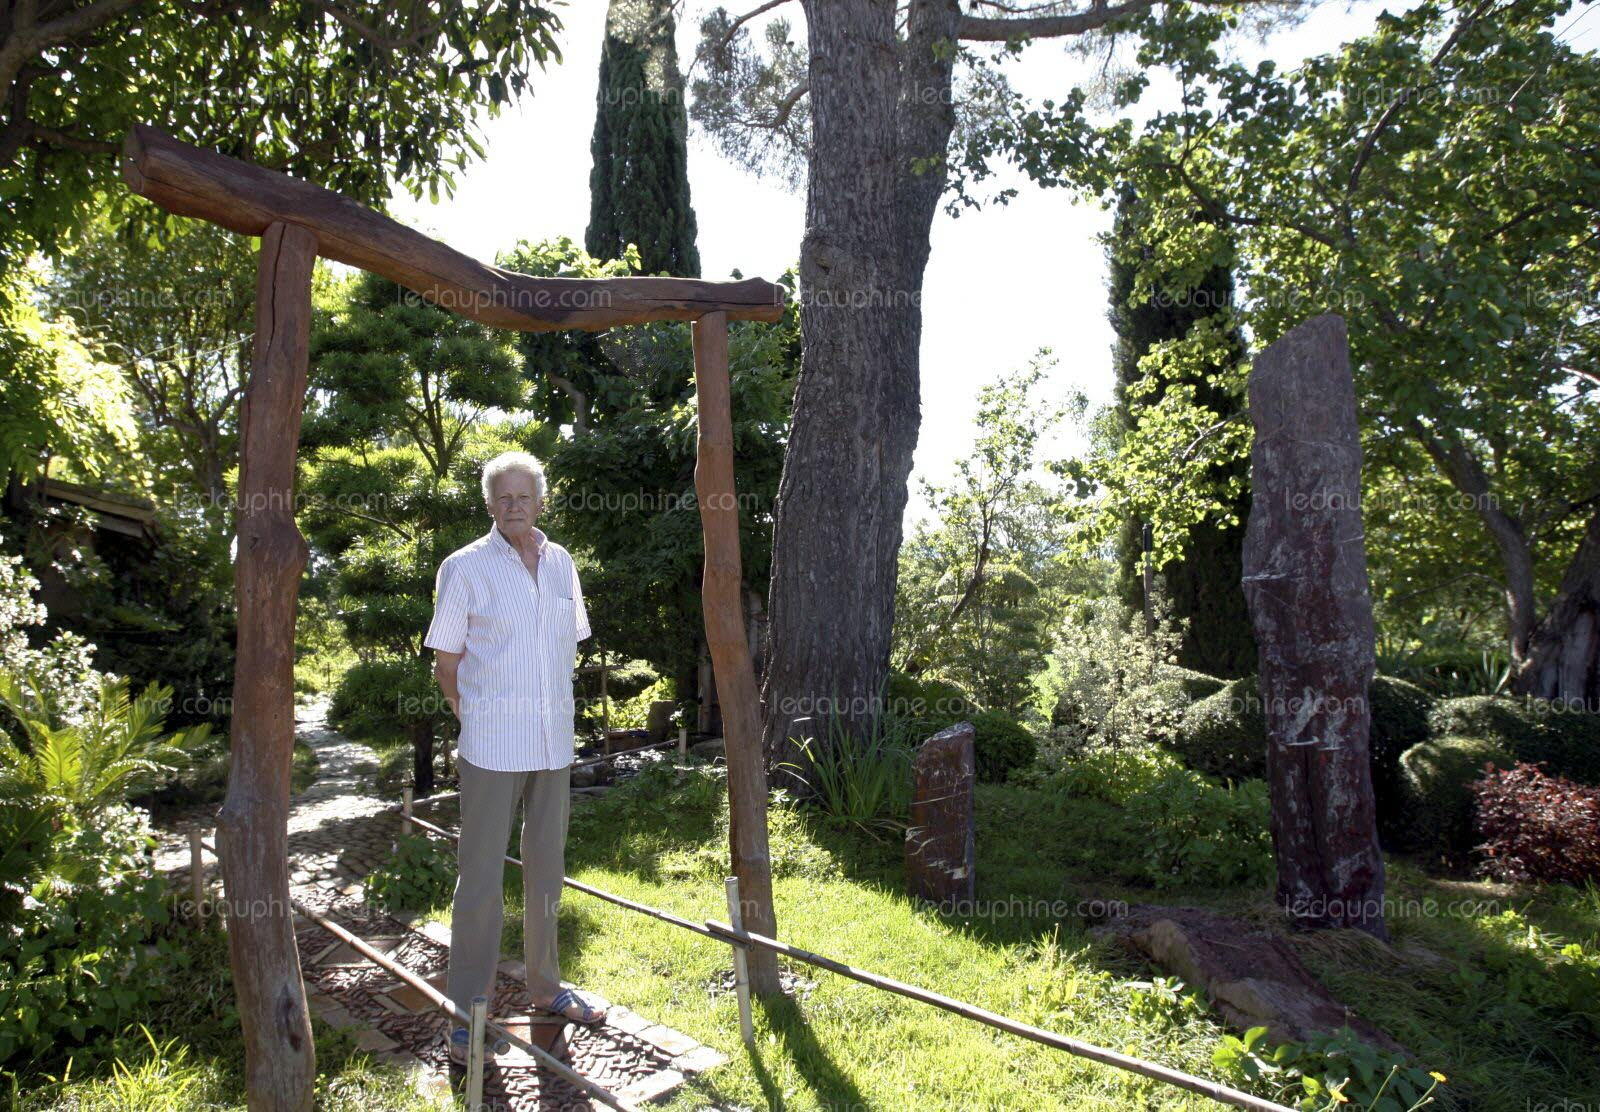 Drôme | Érik Borja, Le Maître D'Un Jardin Zen Extraordinaire à Jardin Zen Drome